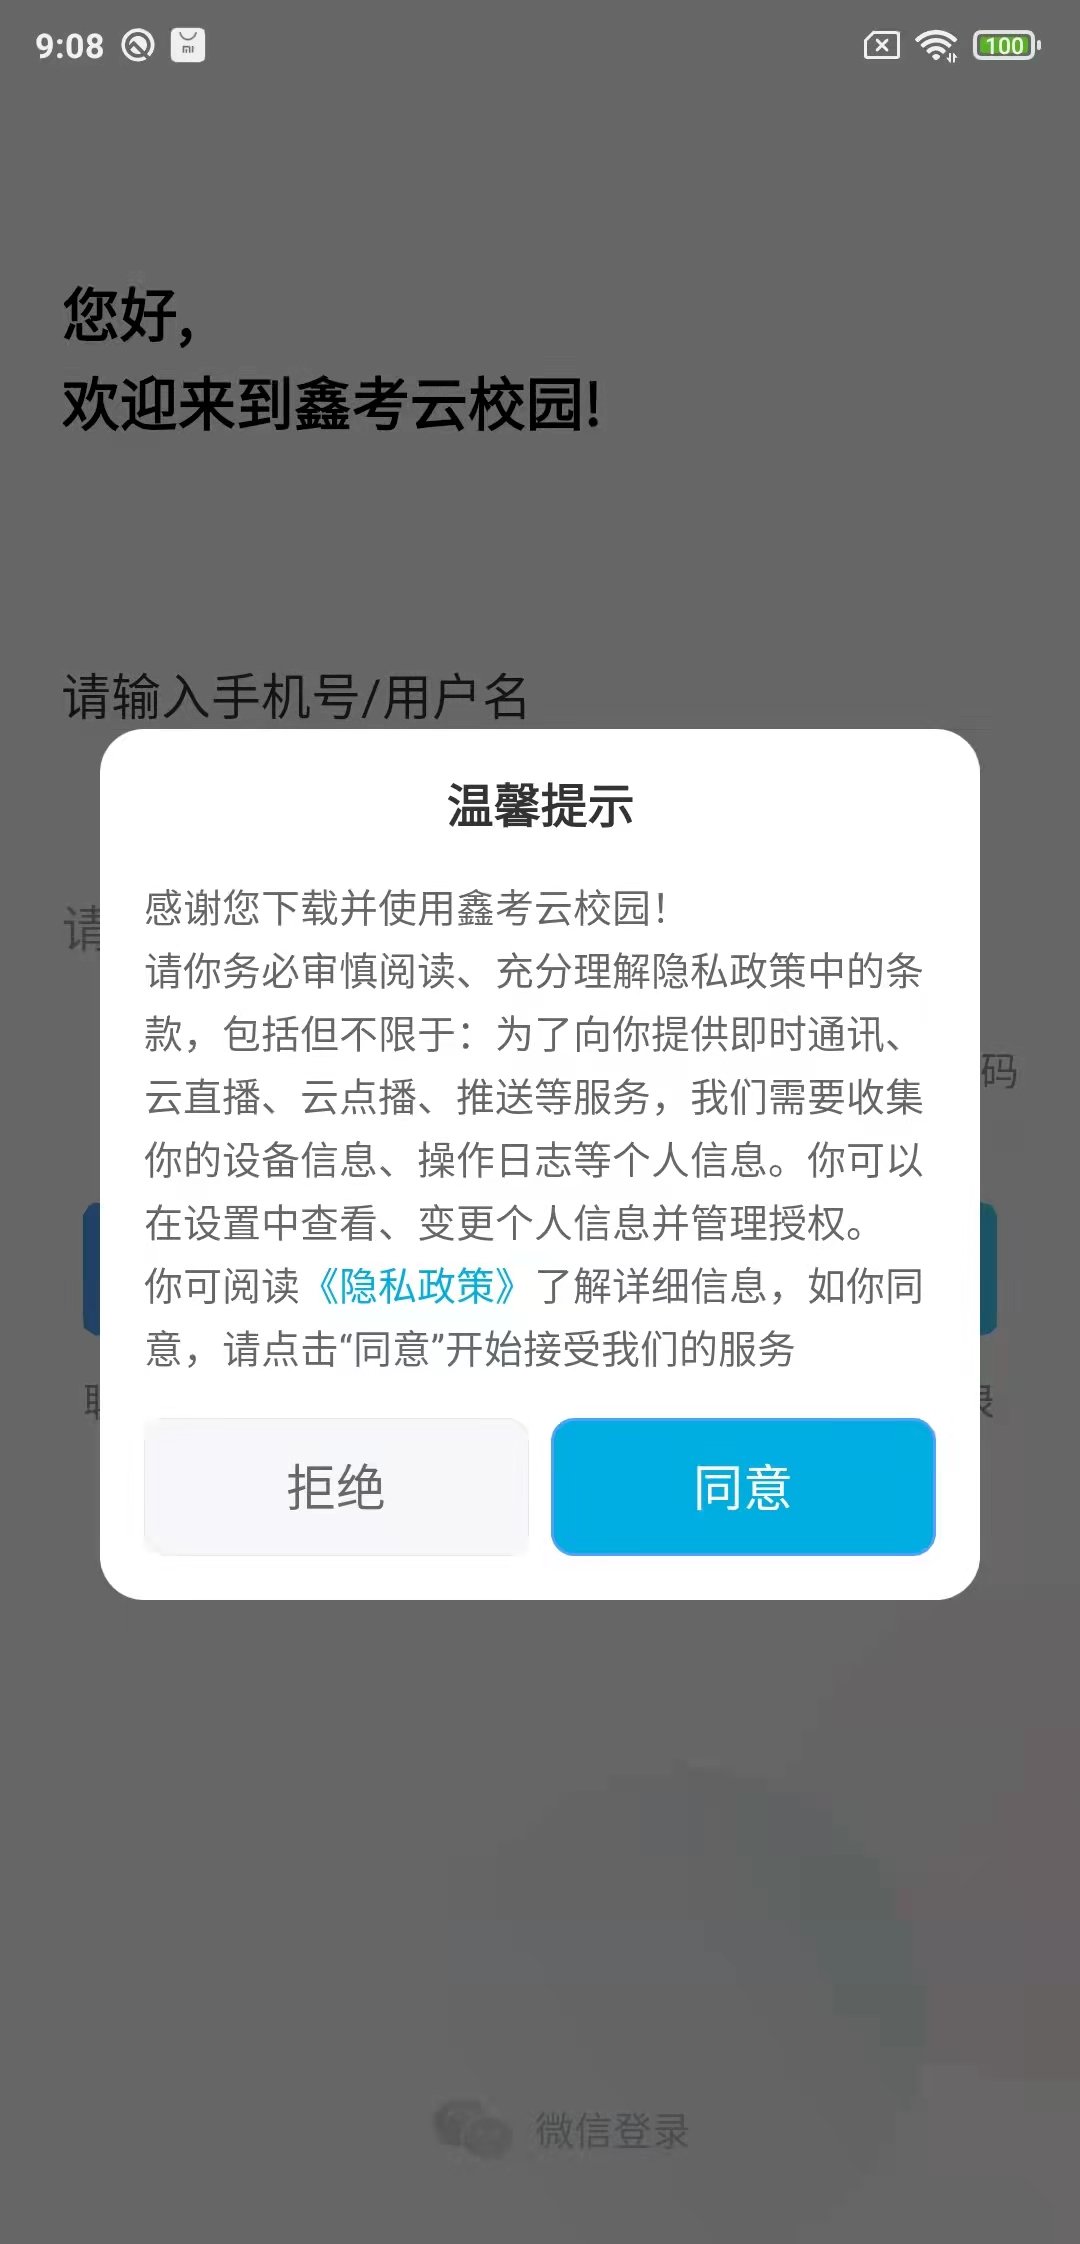 鑫考云校园app下载最新版本学生端